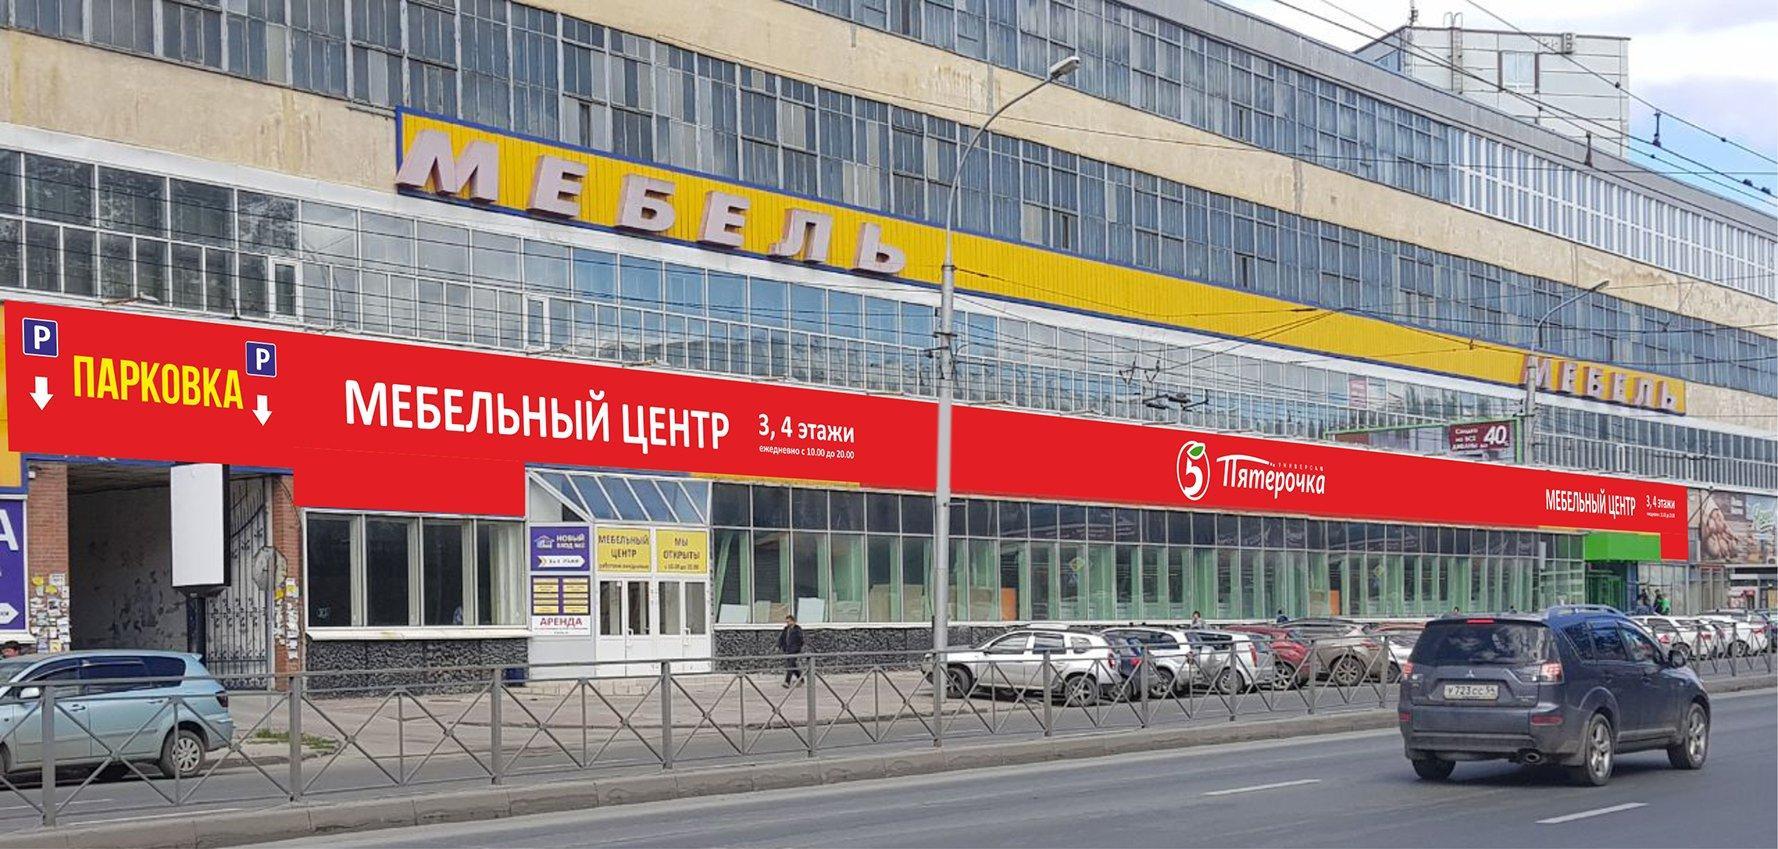 В Новосибирске открылся новый фирменный салон мебели - фото